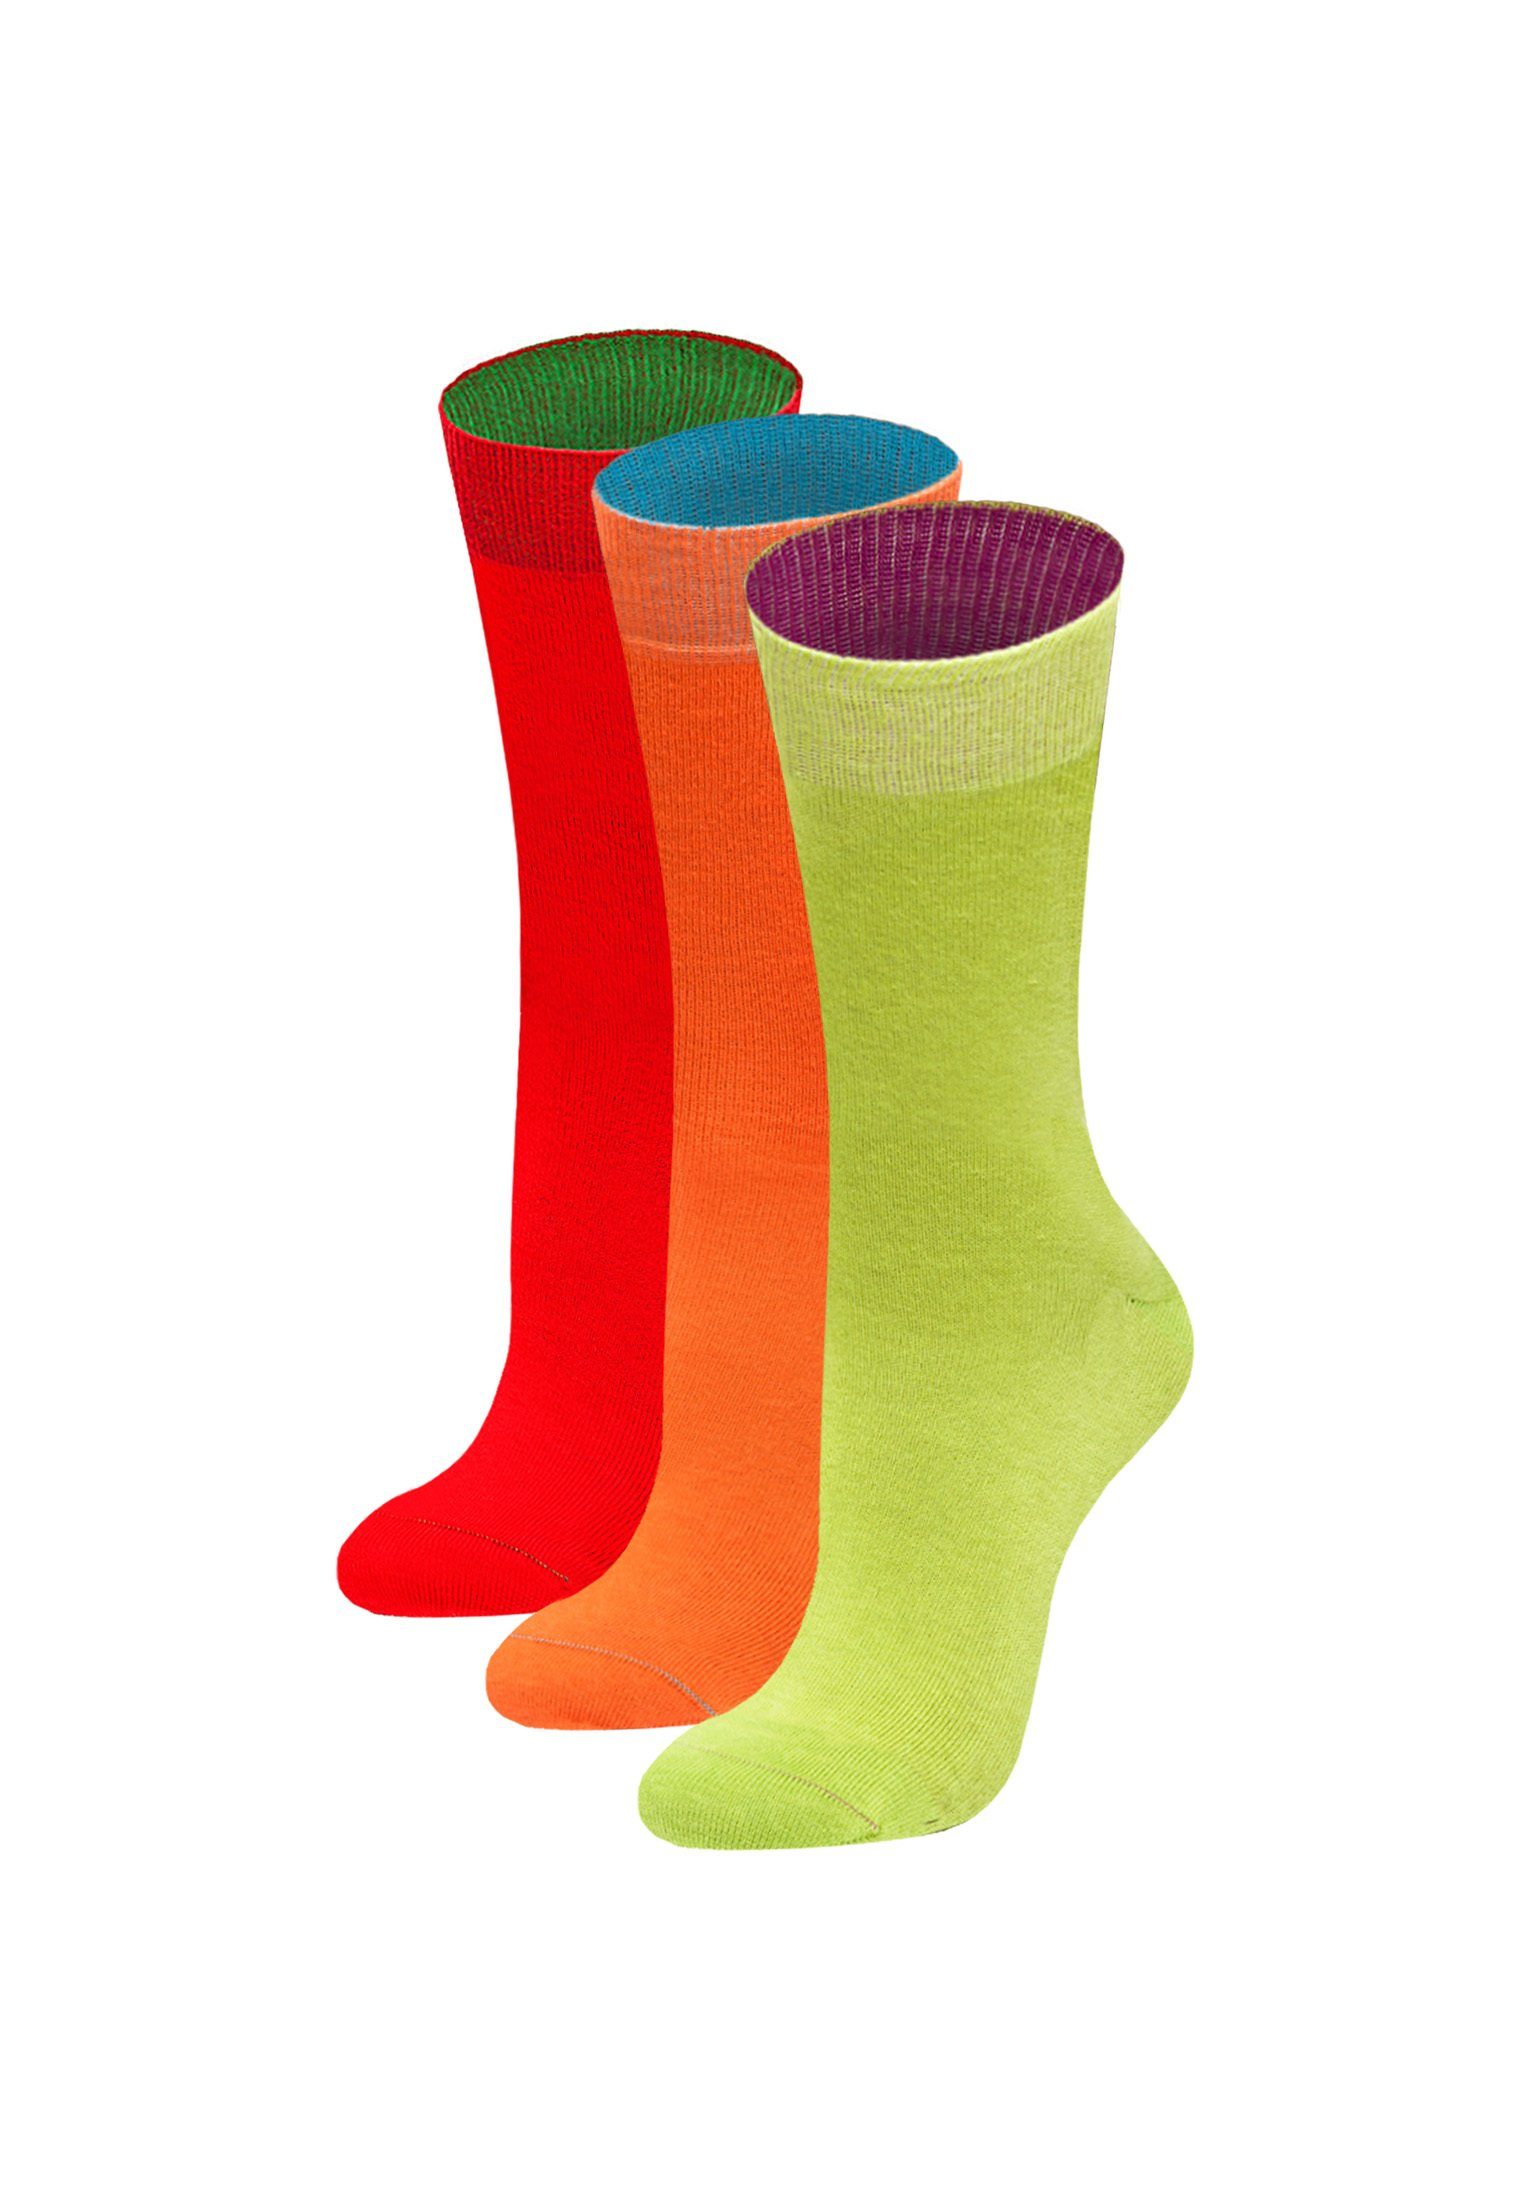 Wäsche/Bademode Socken von Jungfeld Socken (3-Paar) Geschenk Box